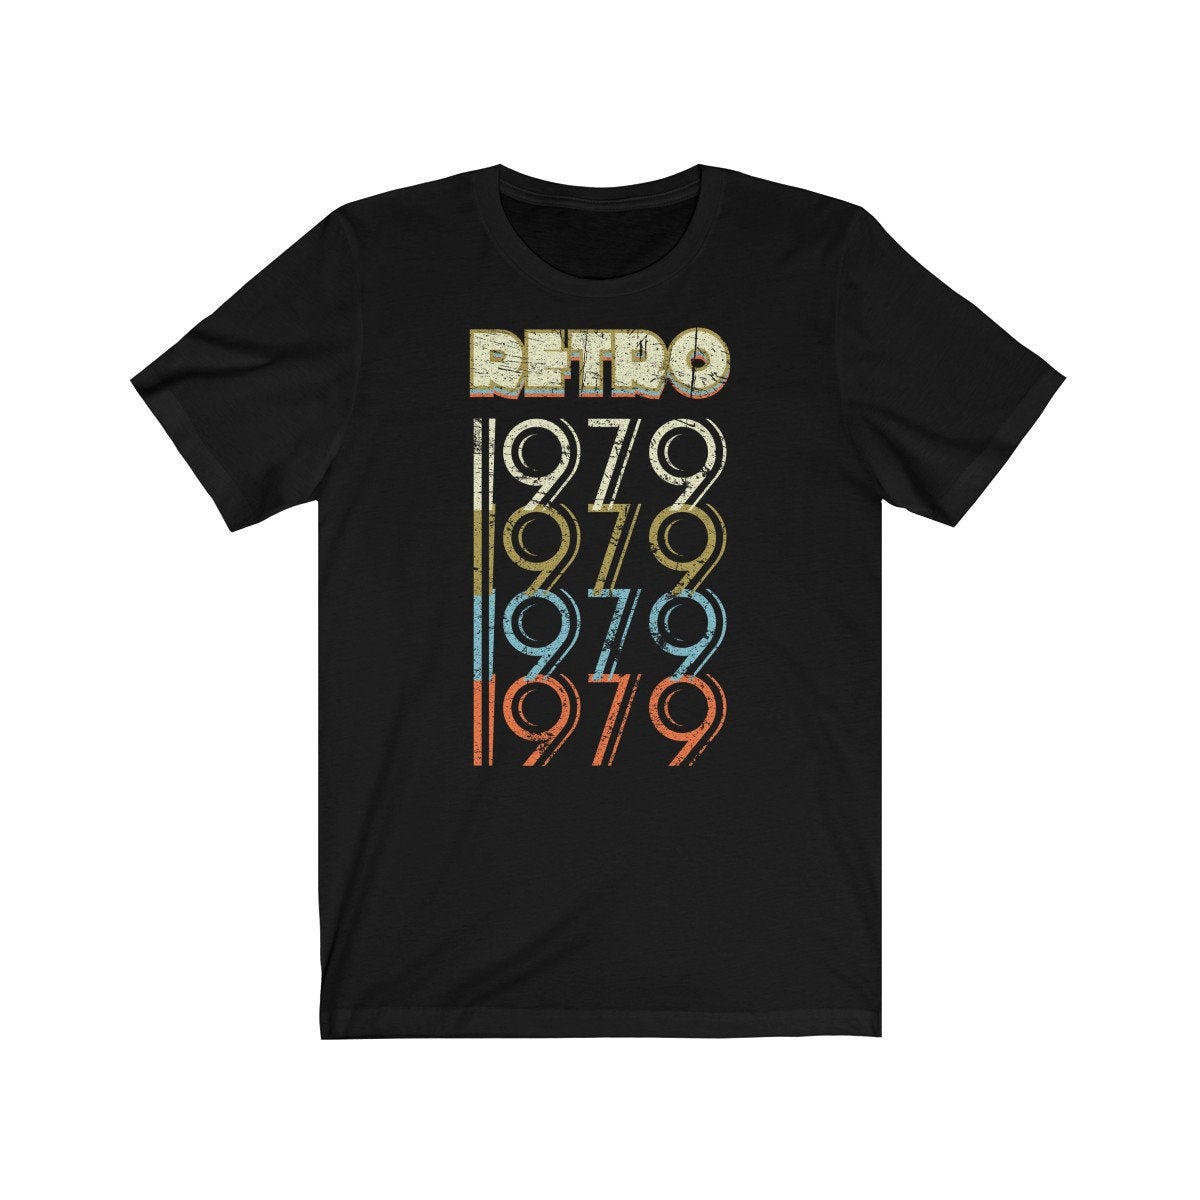 42nd Birthday Gift &#39;Retro 1979&#39; T Shirt for Men or Women Unisex Short Sleeve